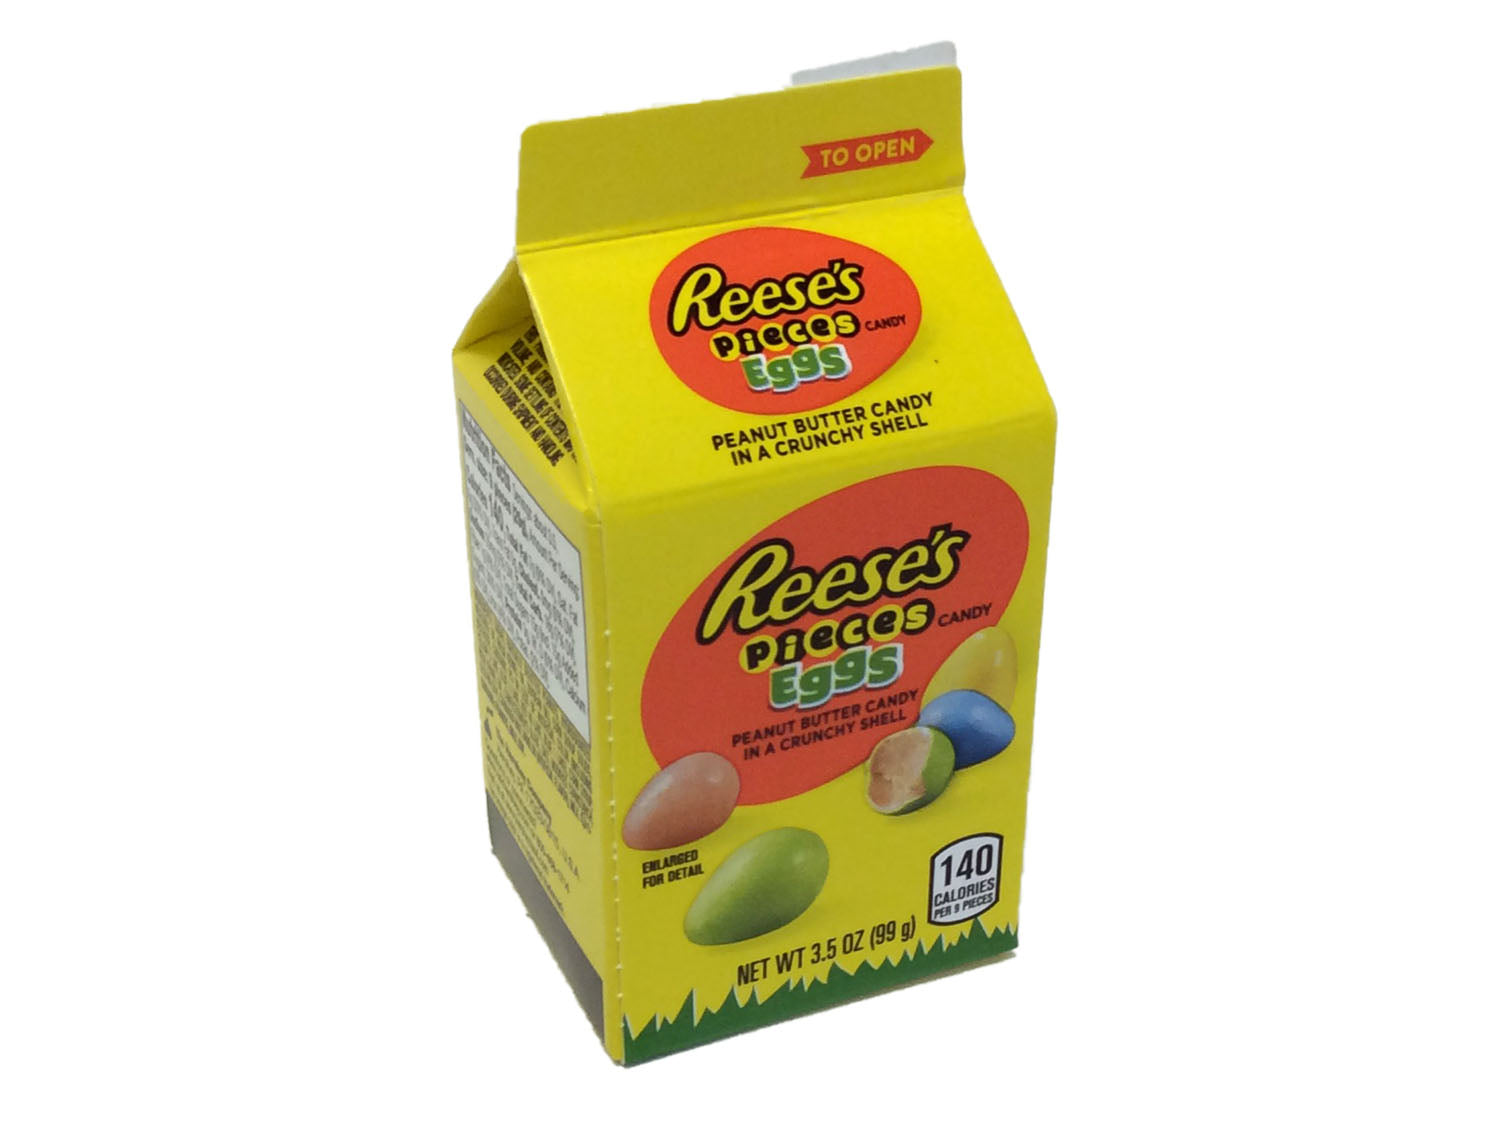 Reese's Pieces Eggs - 3.5 oz carton